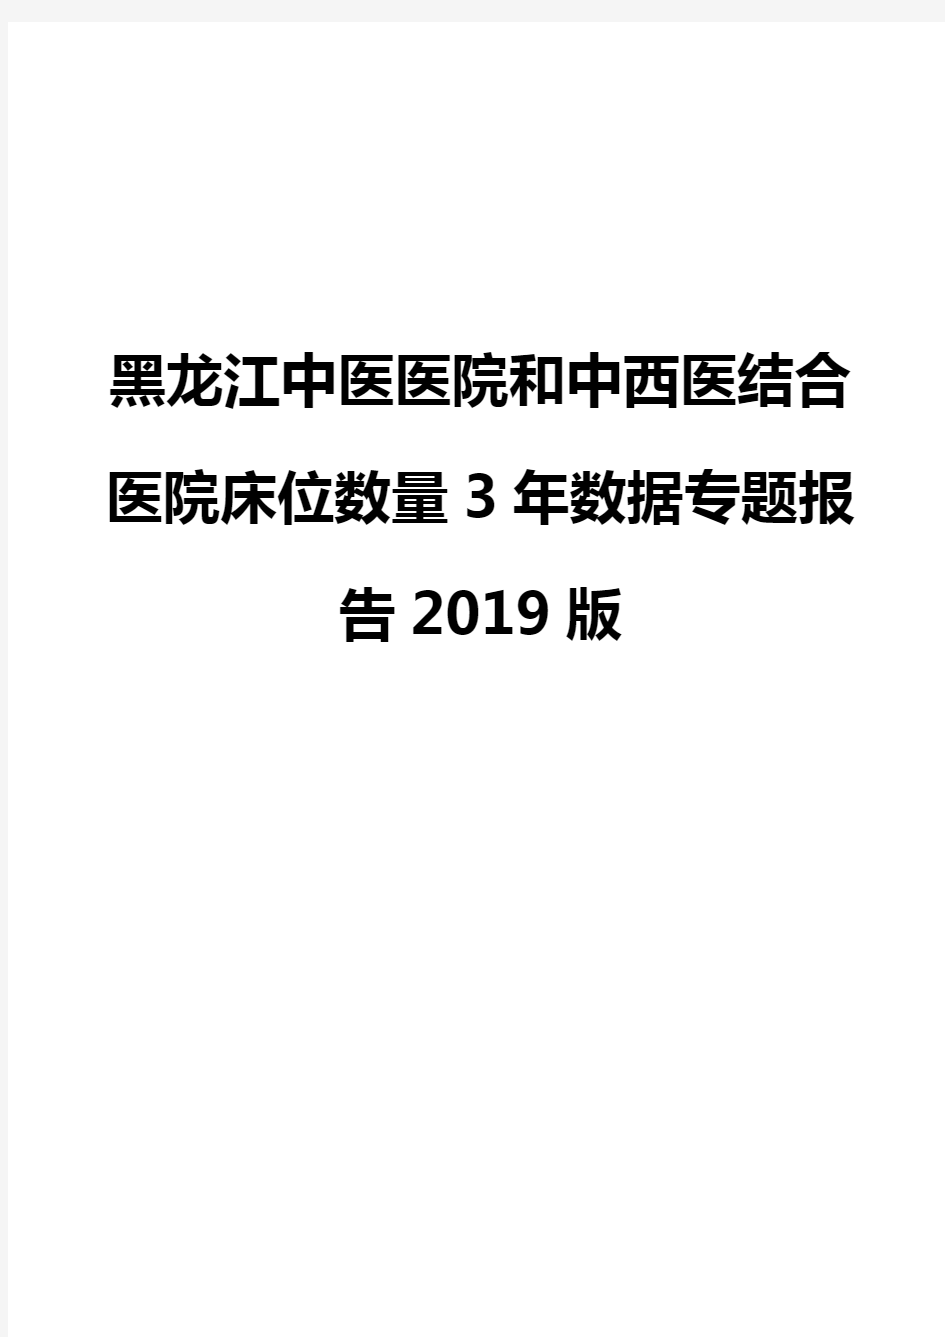 黑龙江中医医院和中西医结合医院床位数量3年数据专题报告2019版